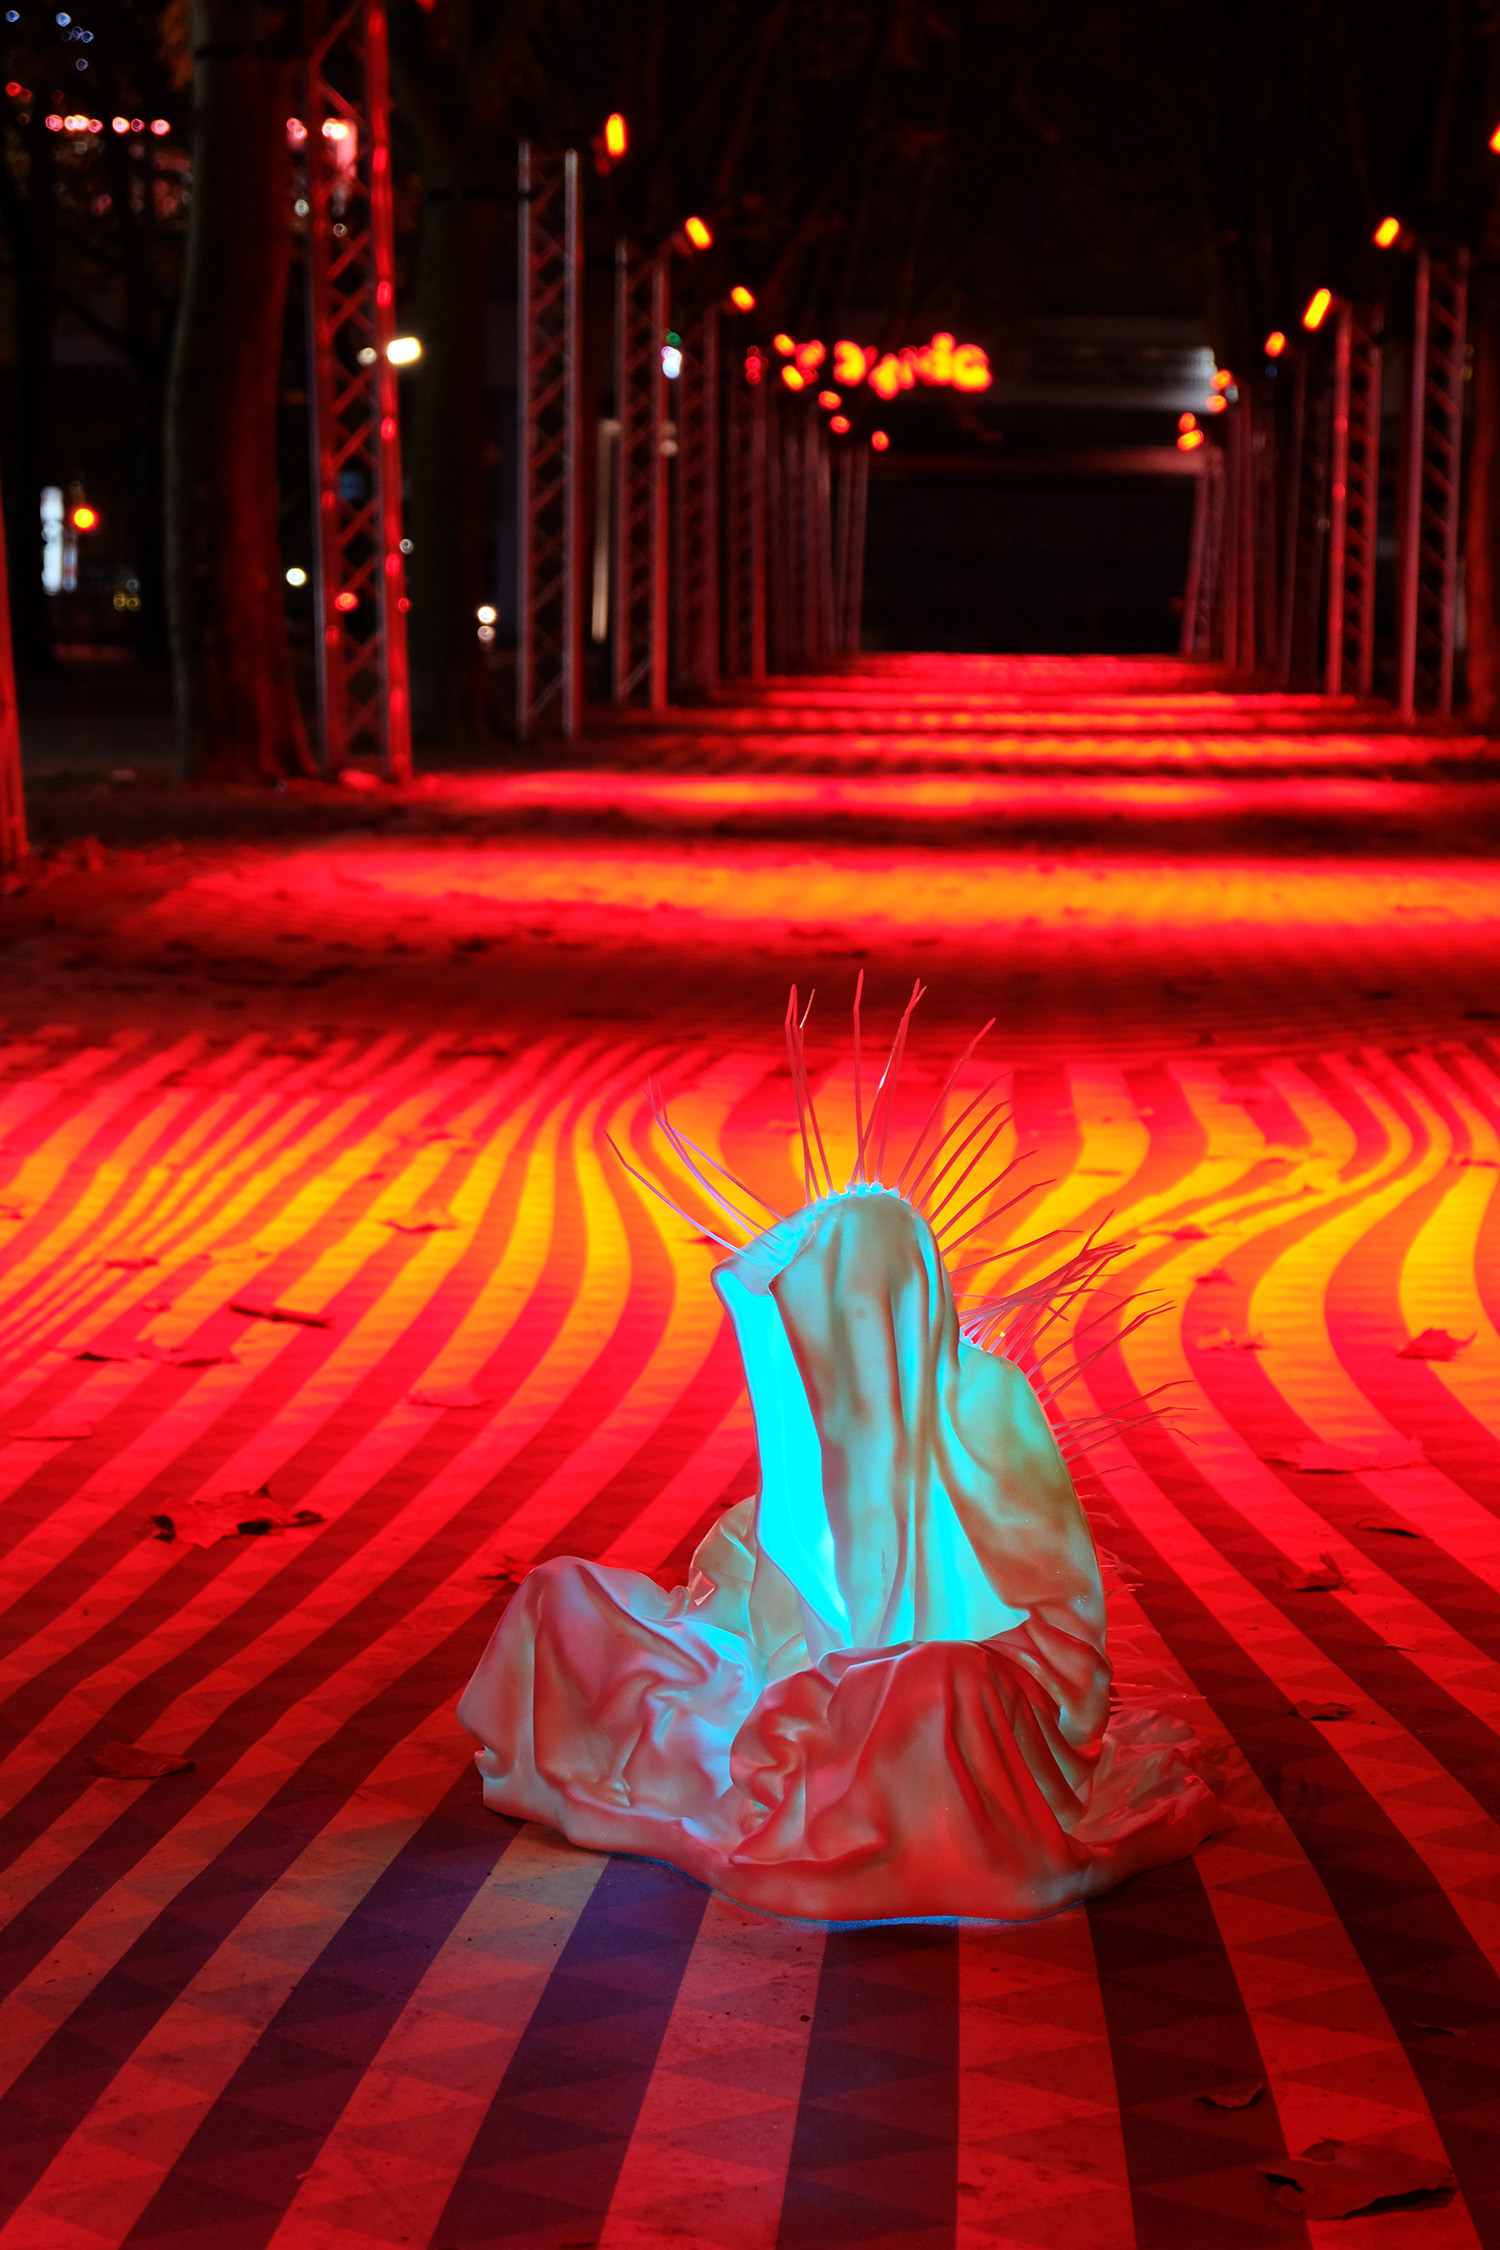 festival-of-lights-berlin-light-art-show-ilumination-lumina-glow-fine-art-modern-design-contemporary-sculpture-statue-ghost-faceless-9177